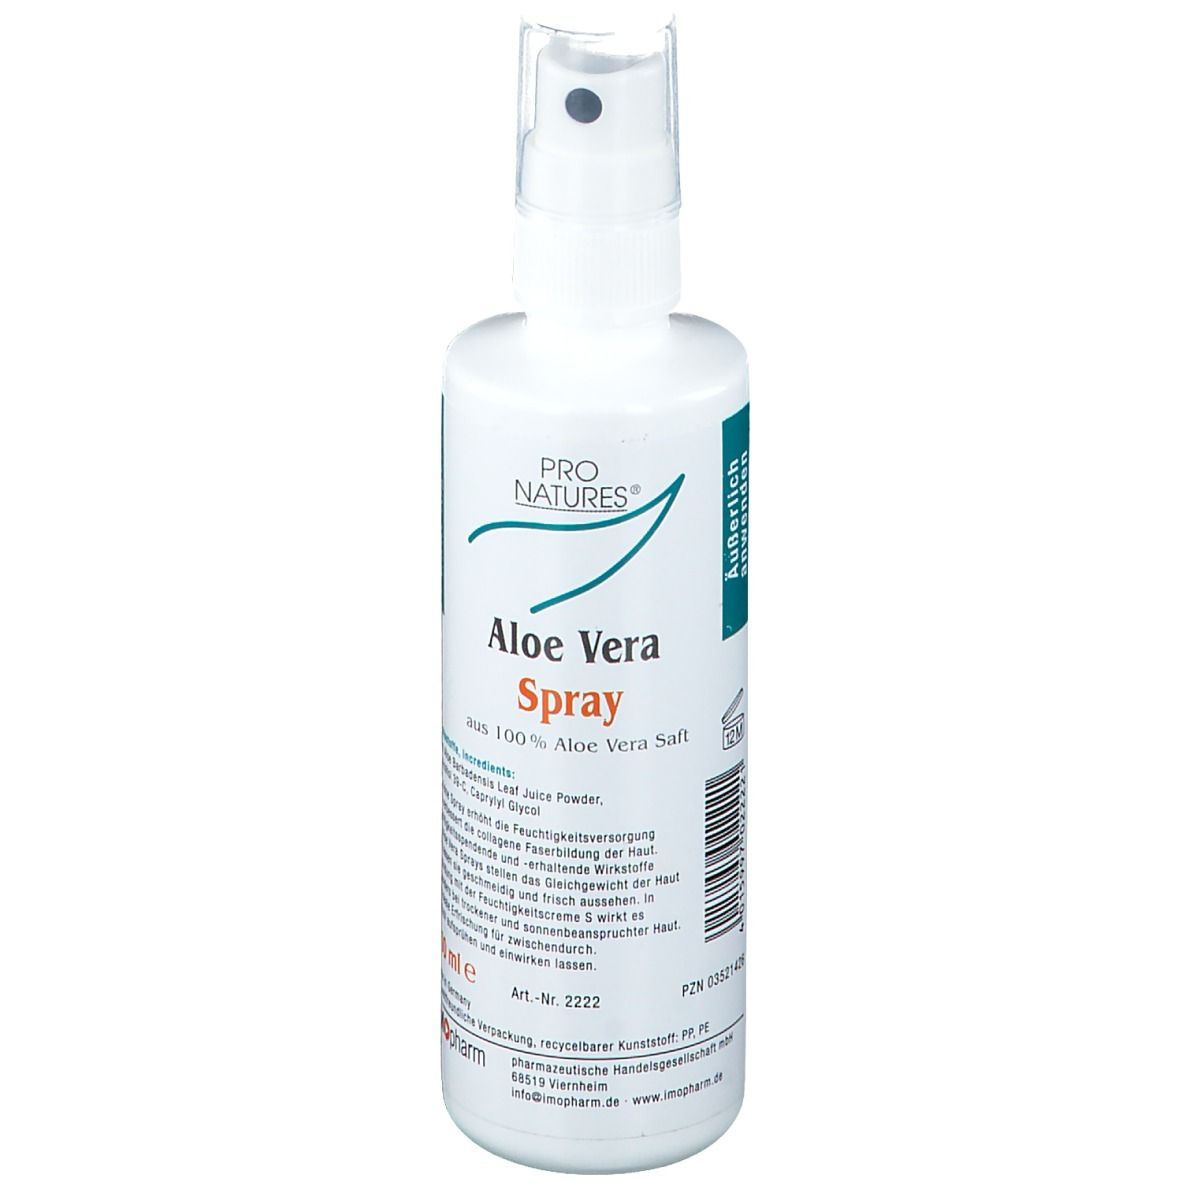 PRO NATURES® Aloe Vera Spray